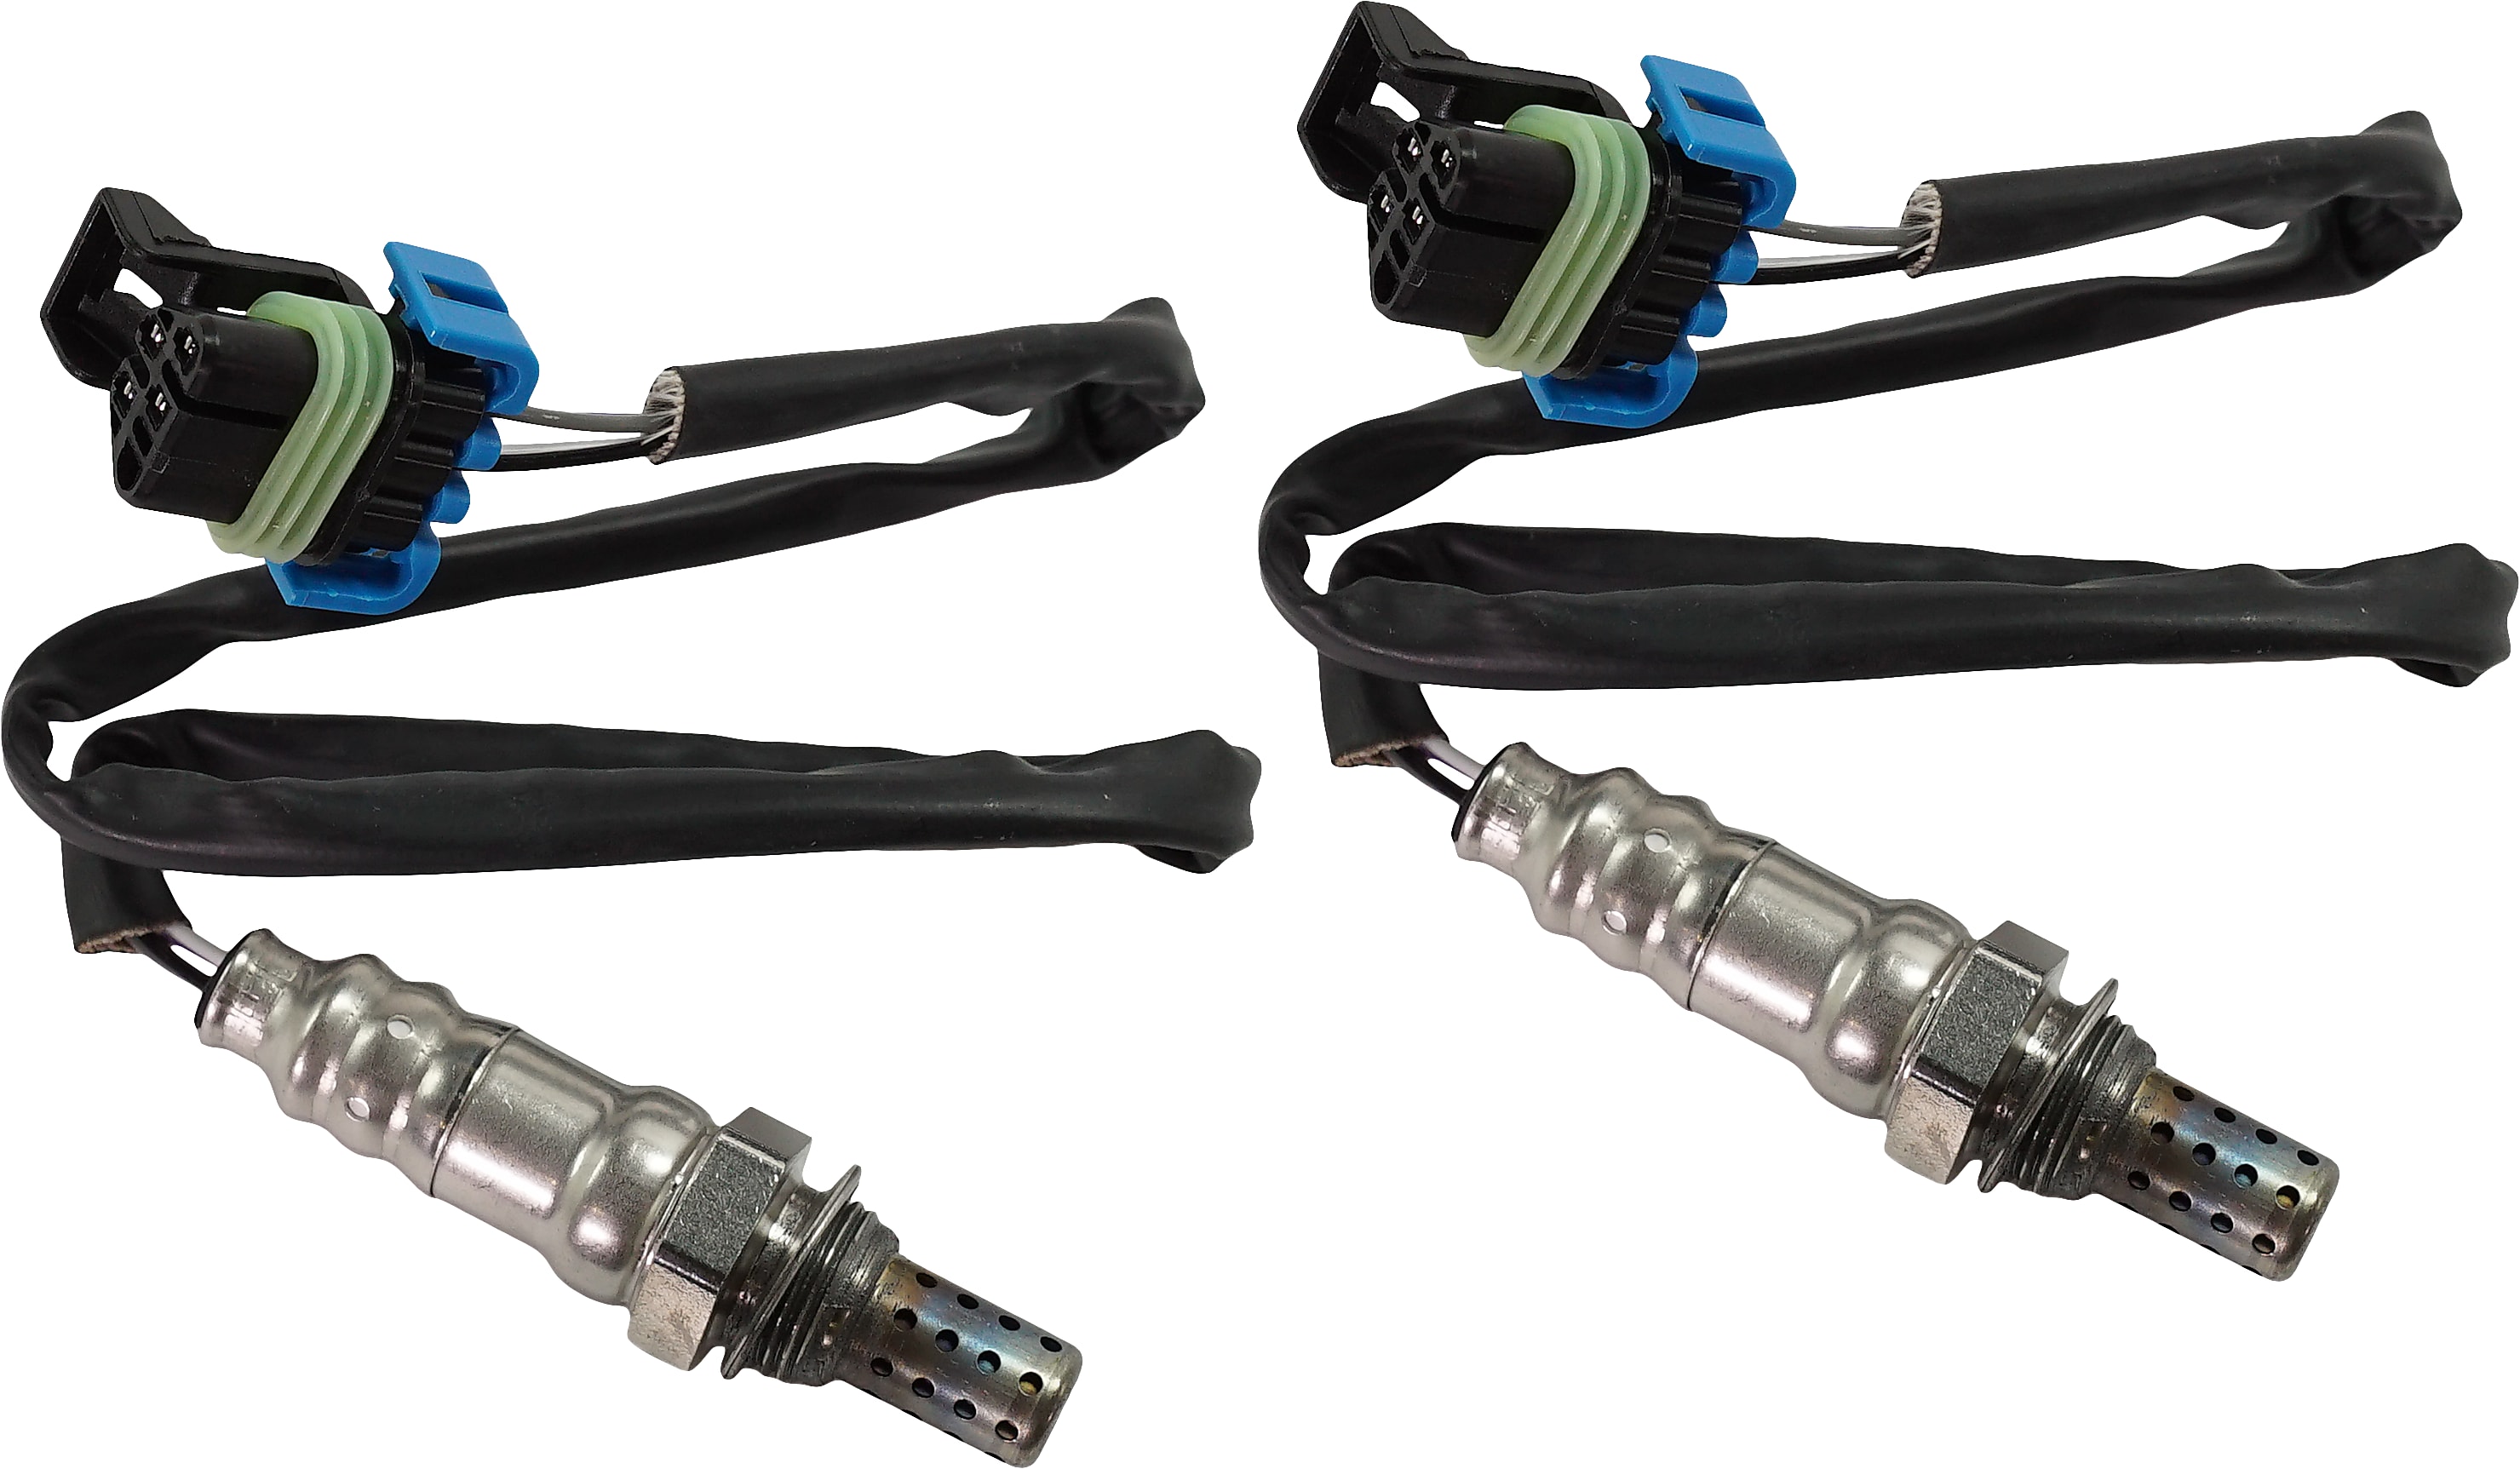 wires 4 Rear O2 sensor GoSens 110 Oxygen Sensor for Cadillac for Chevrolet for Pontiac OE# 19178928,250-24087,0258005738 length 450mm 1996-2002 